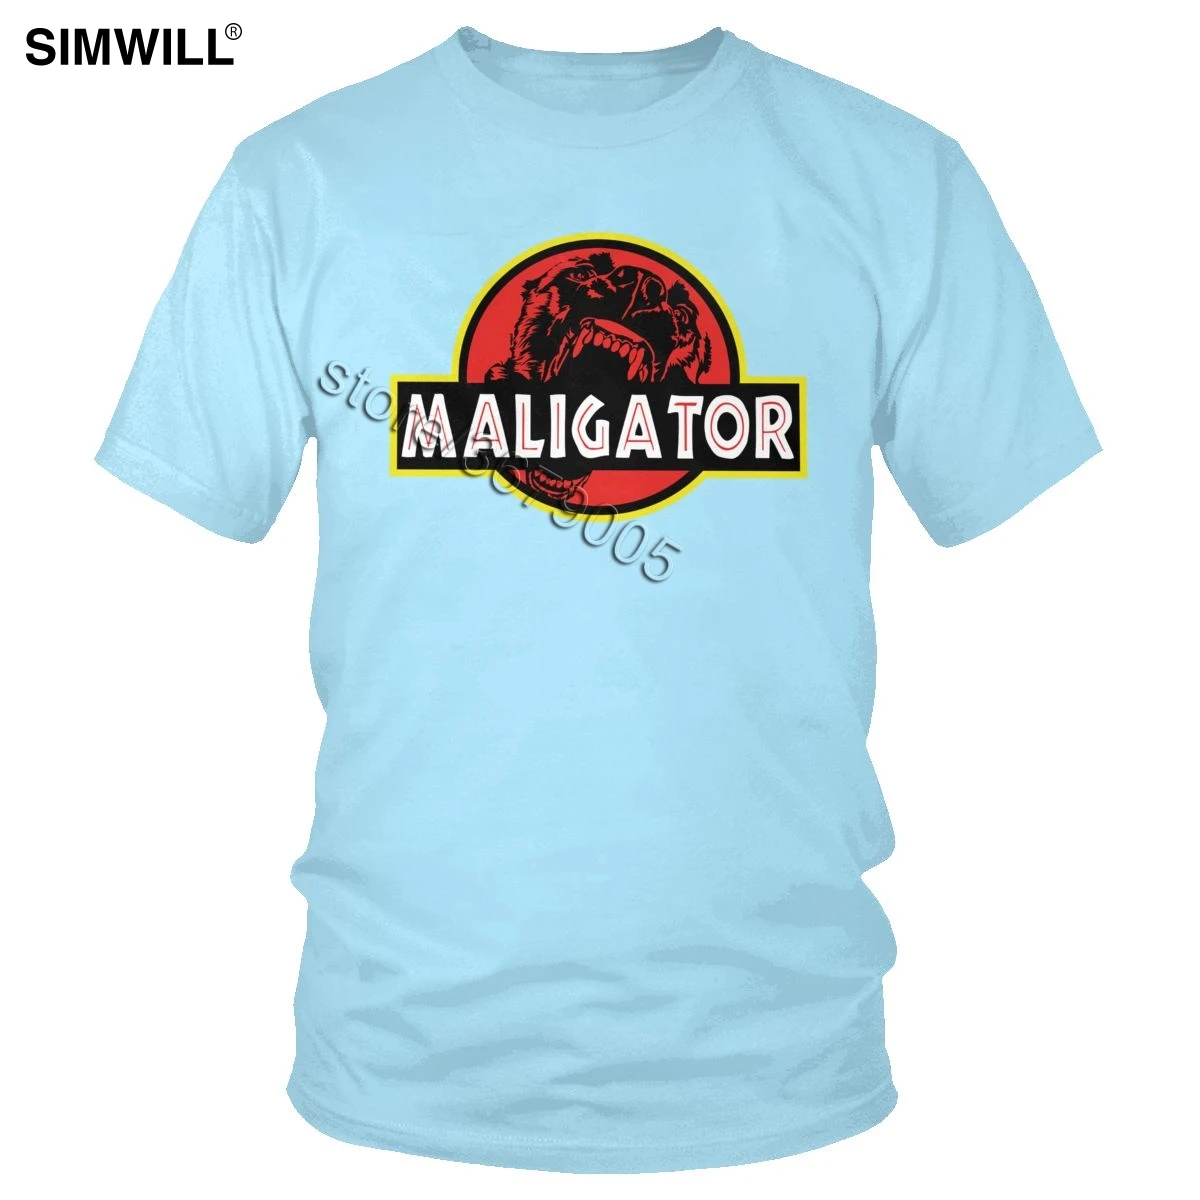 Мужская футболка Maligator из чистого хлопка, Бельгийская овчарка, малинуа, футболки с коротким рукавом и круглым вырезом, графические футболки, большие размеры - Цвет: Небесно-голубой